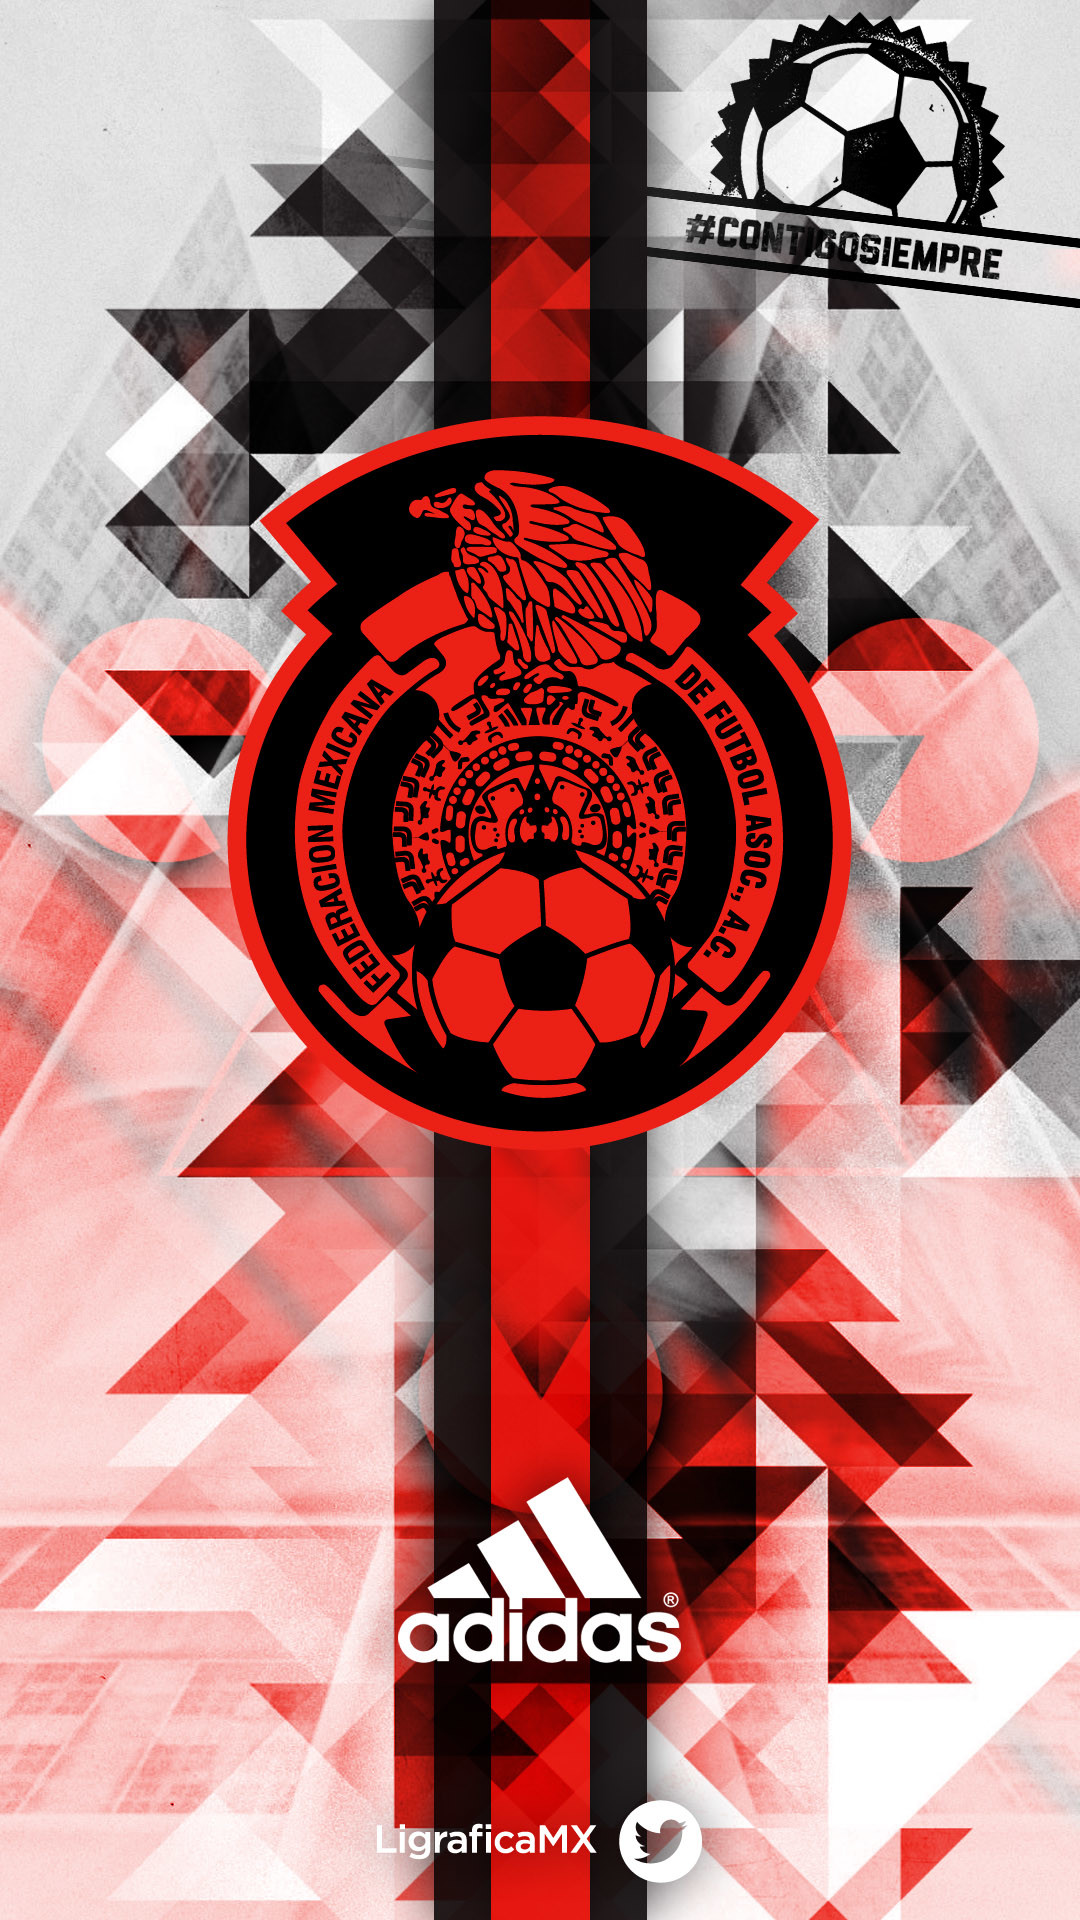 1080x1920 @SelecciÃ³n Mexicana #contigosiempre • LigraficaMX 280314CTG Â¡El fÃºtbol nos  inspira! Mexico SoccerTeam WallpaperSoccer ...